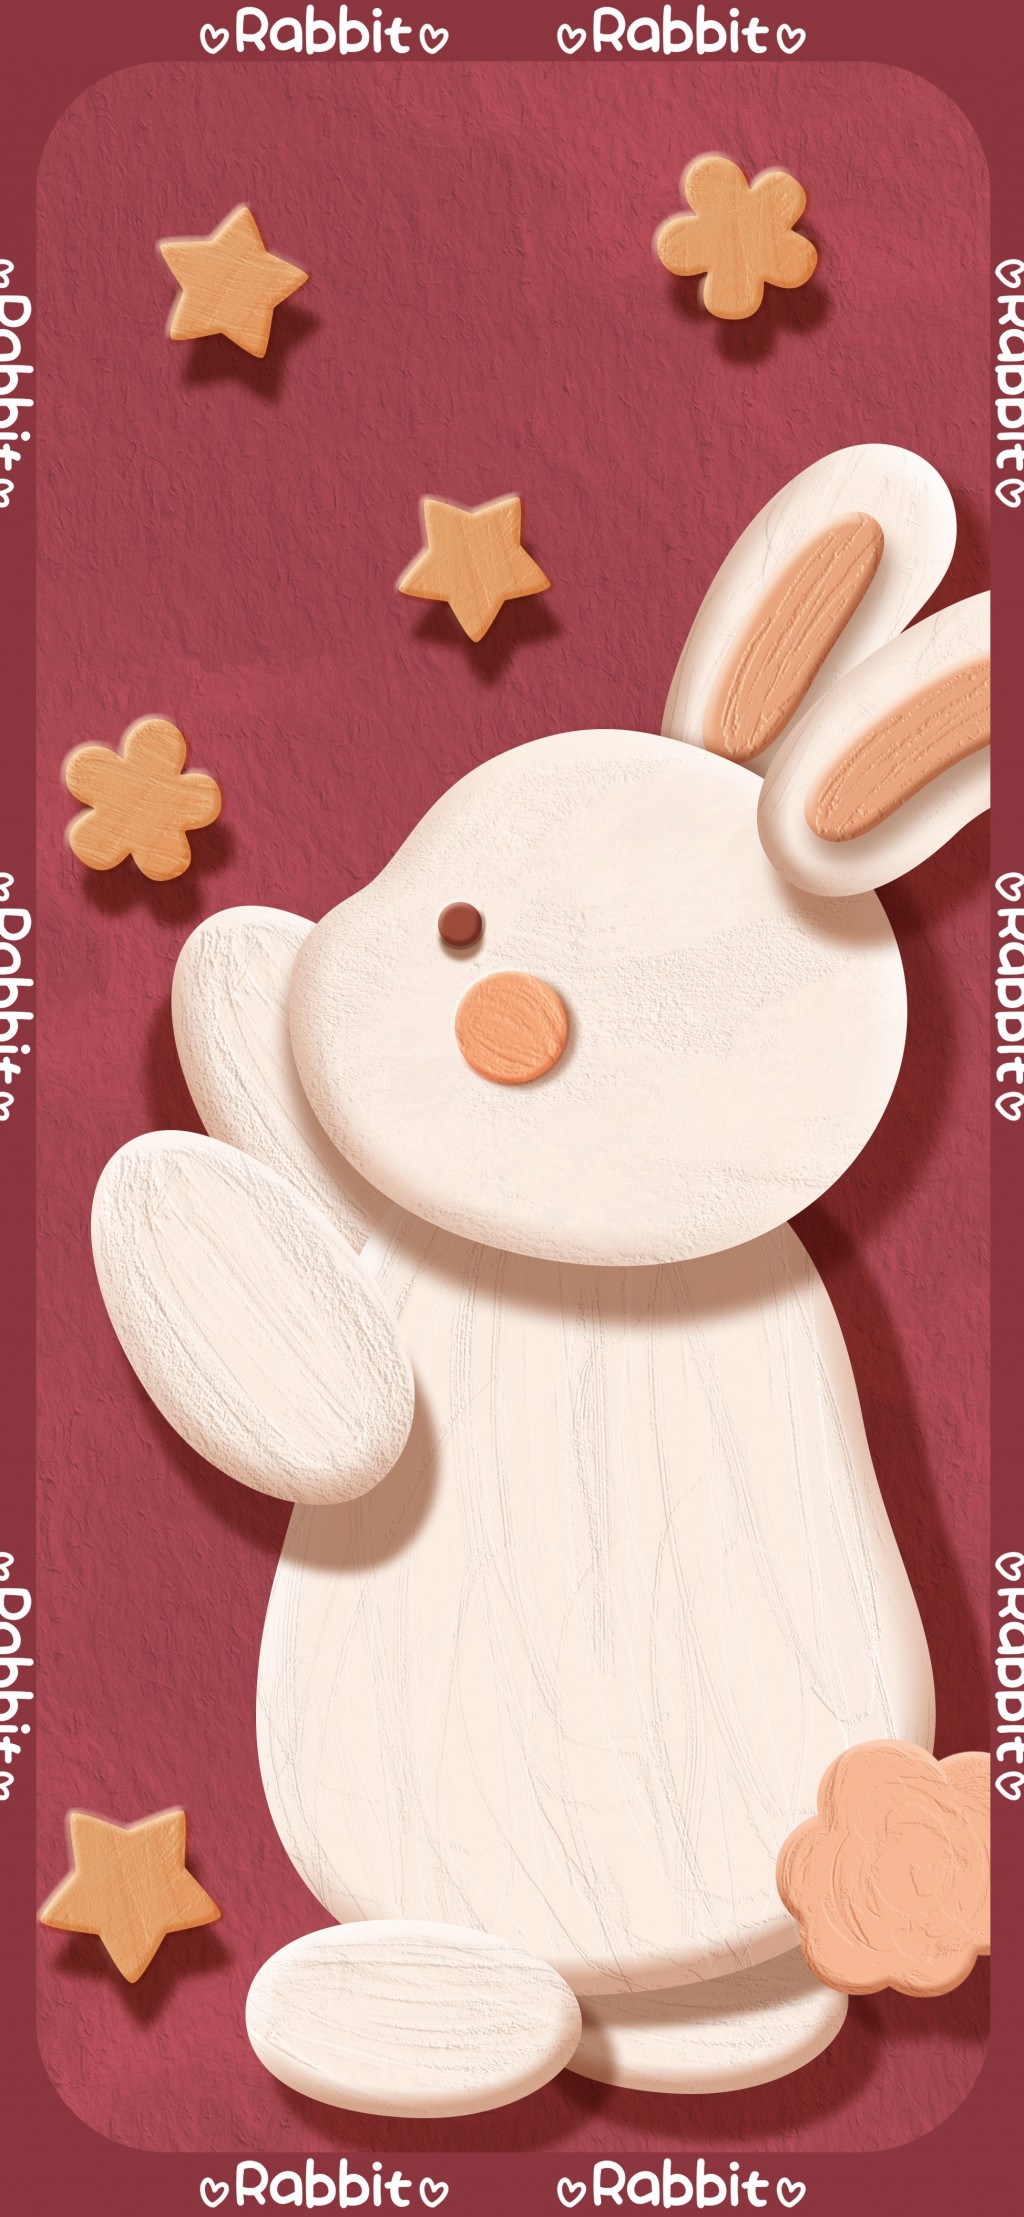 兔年系列红色喜庆文字手机壁纸